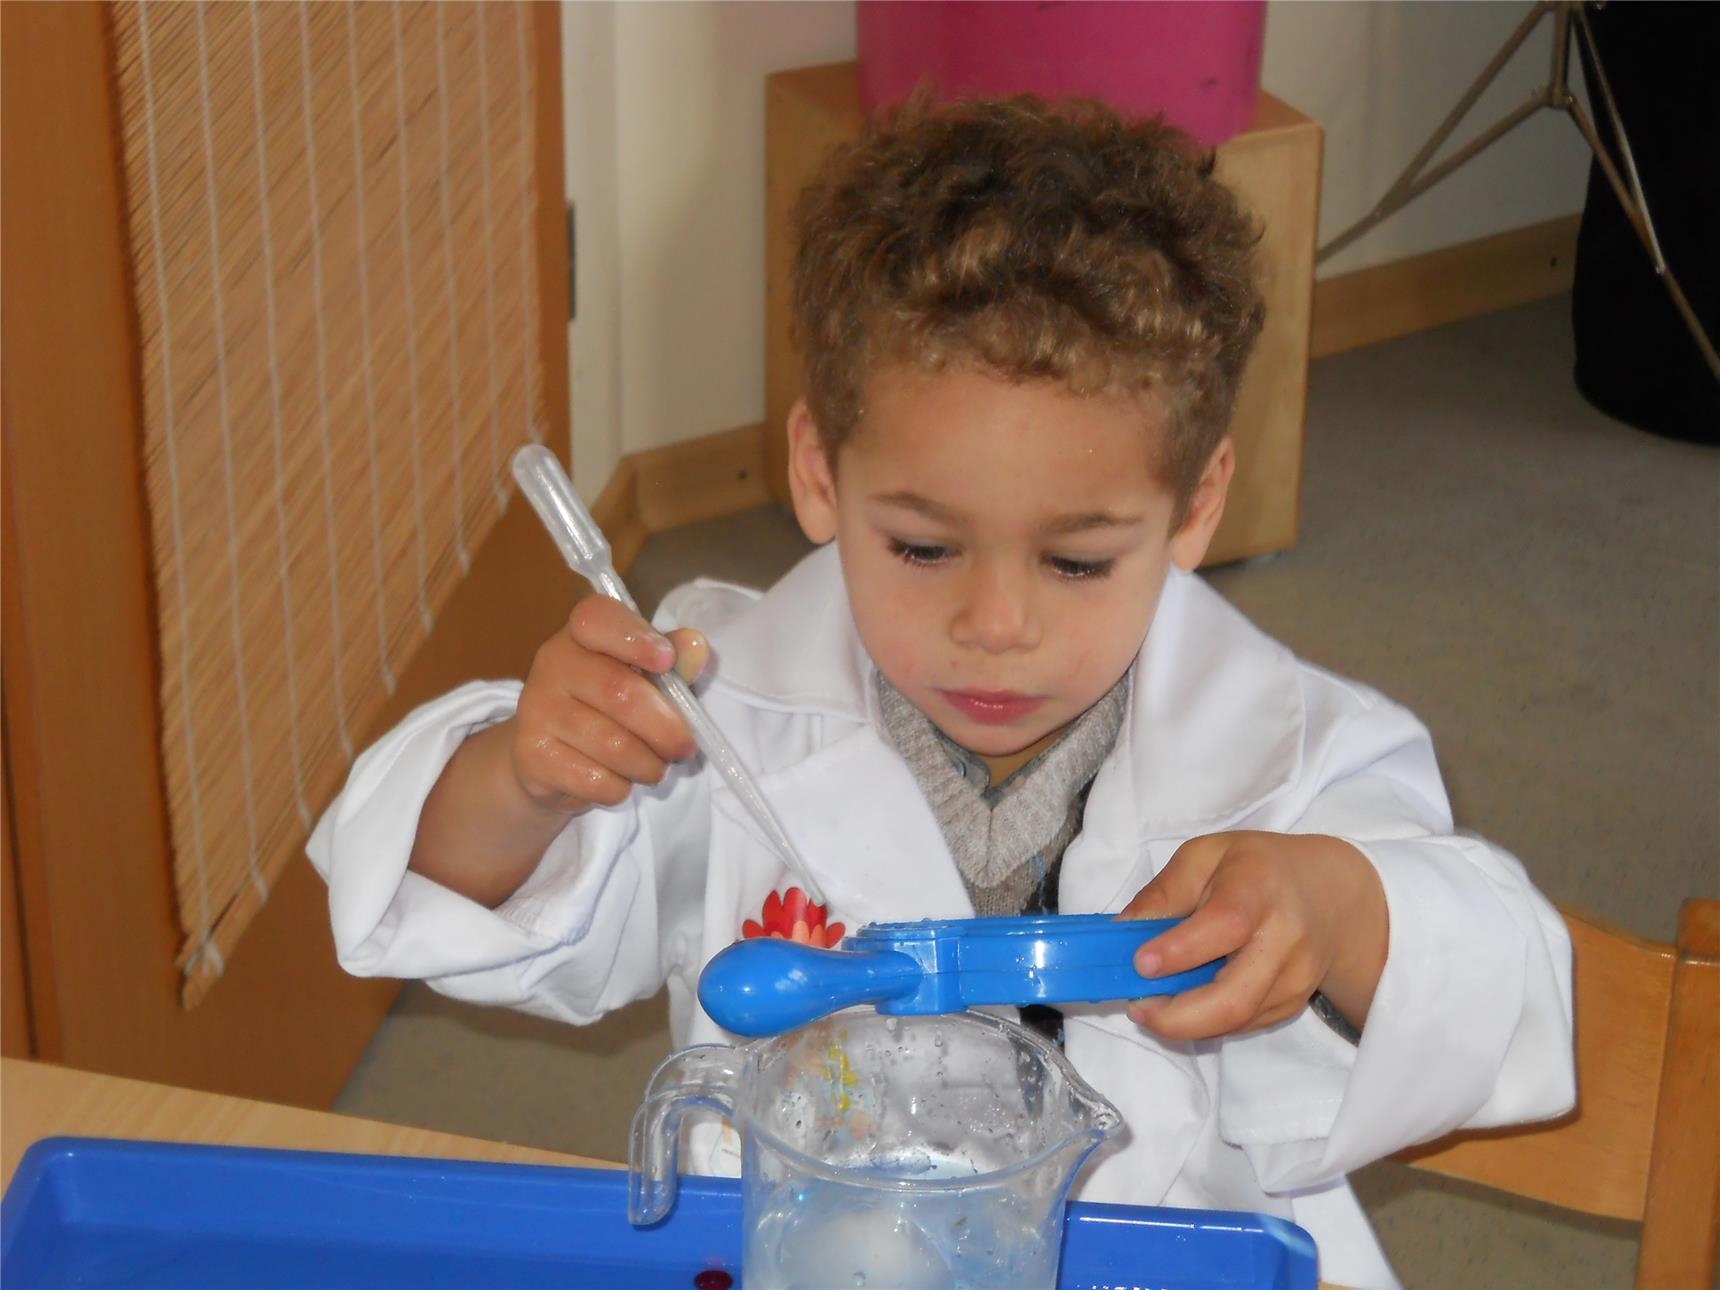 Ein Kind in weißem Kittel sitzt mit einer Pipette und einer Plastikschale in Händen vor einem Tisch, auf dem ein Messbecher mit Wasser steht ( Caritasverband Trier e. V.)